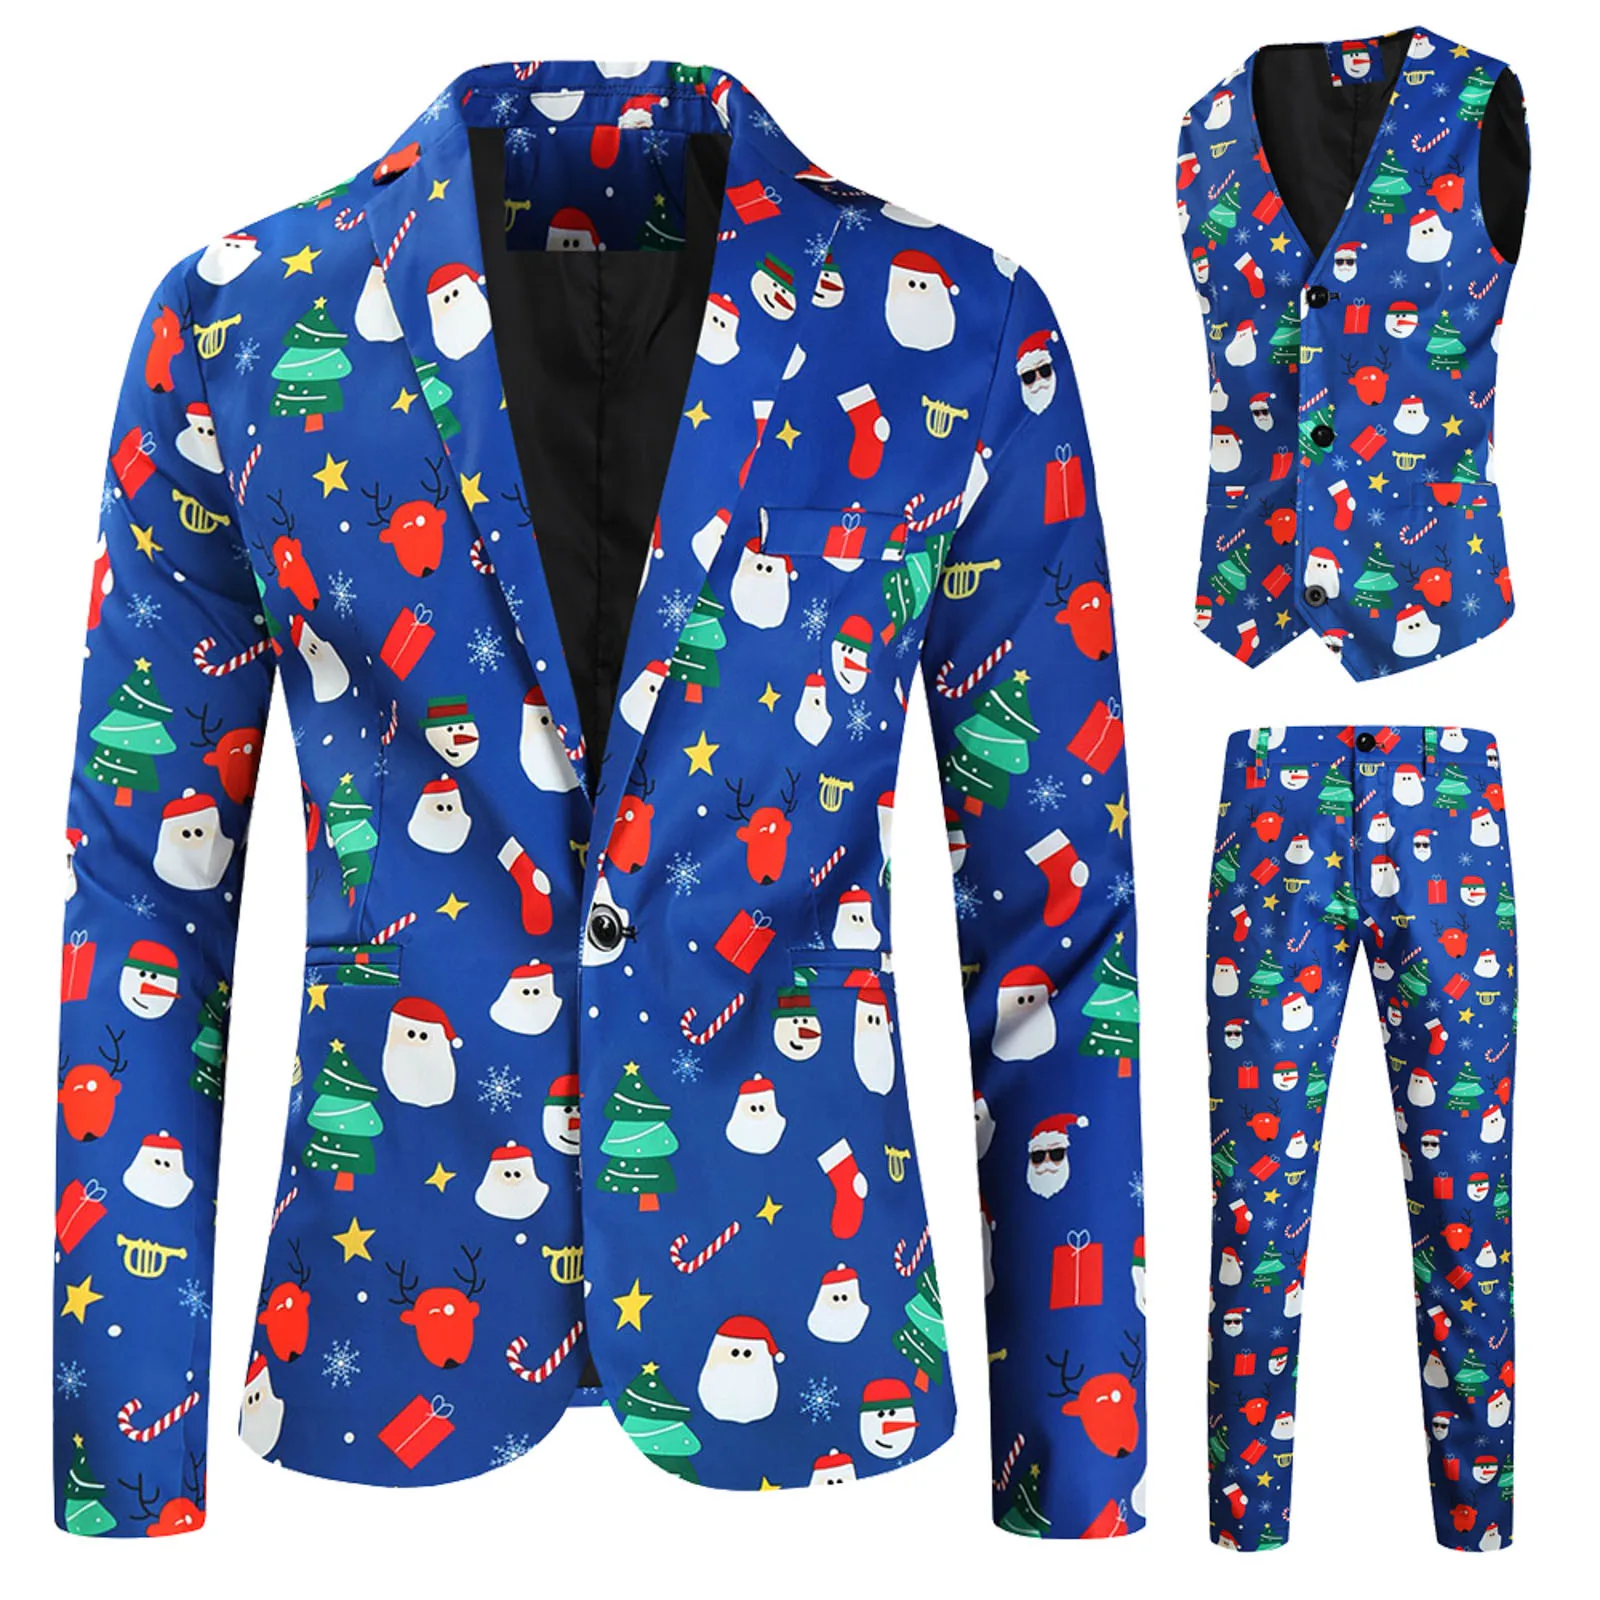 

Mens New Fashion Christmas Print Suit Banquet Stage Suit Mens Casual 3Pieces Sets Vest+Pants+Coat Men's Christmas Suit wholesale